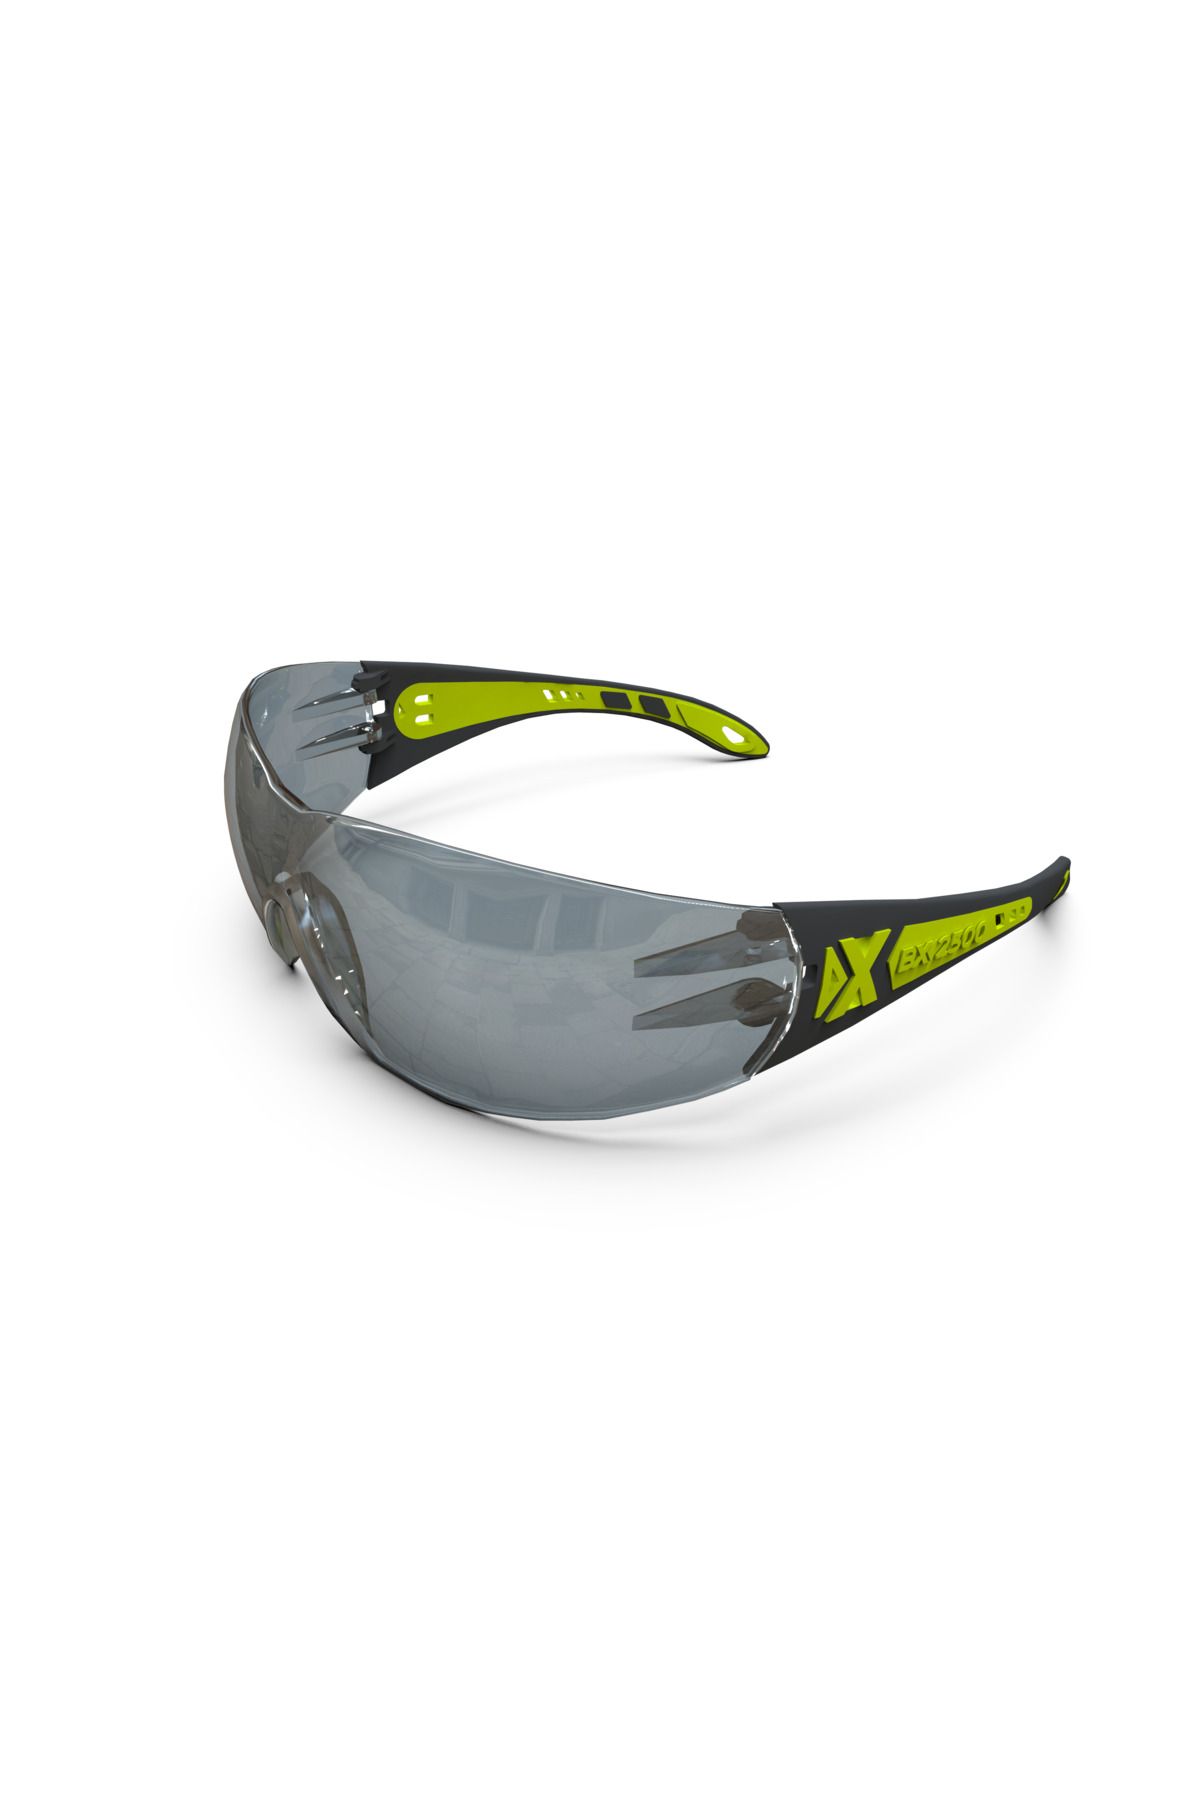 Baymax Koruyucu Gözlük Bx-2500 Solo Füme (buğulanmaz) Antifog Iş Güvenliği Gözlüğü Çapak Gözlük